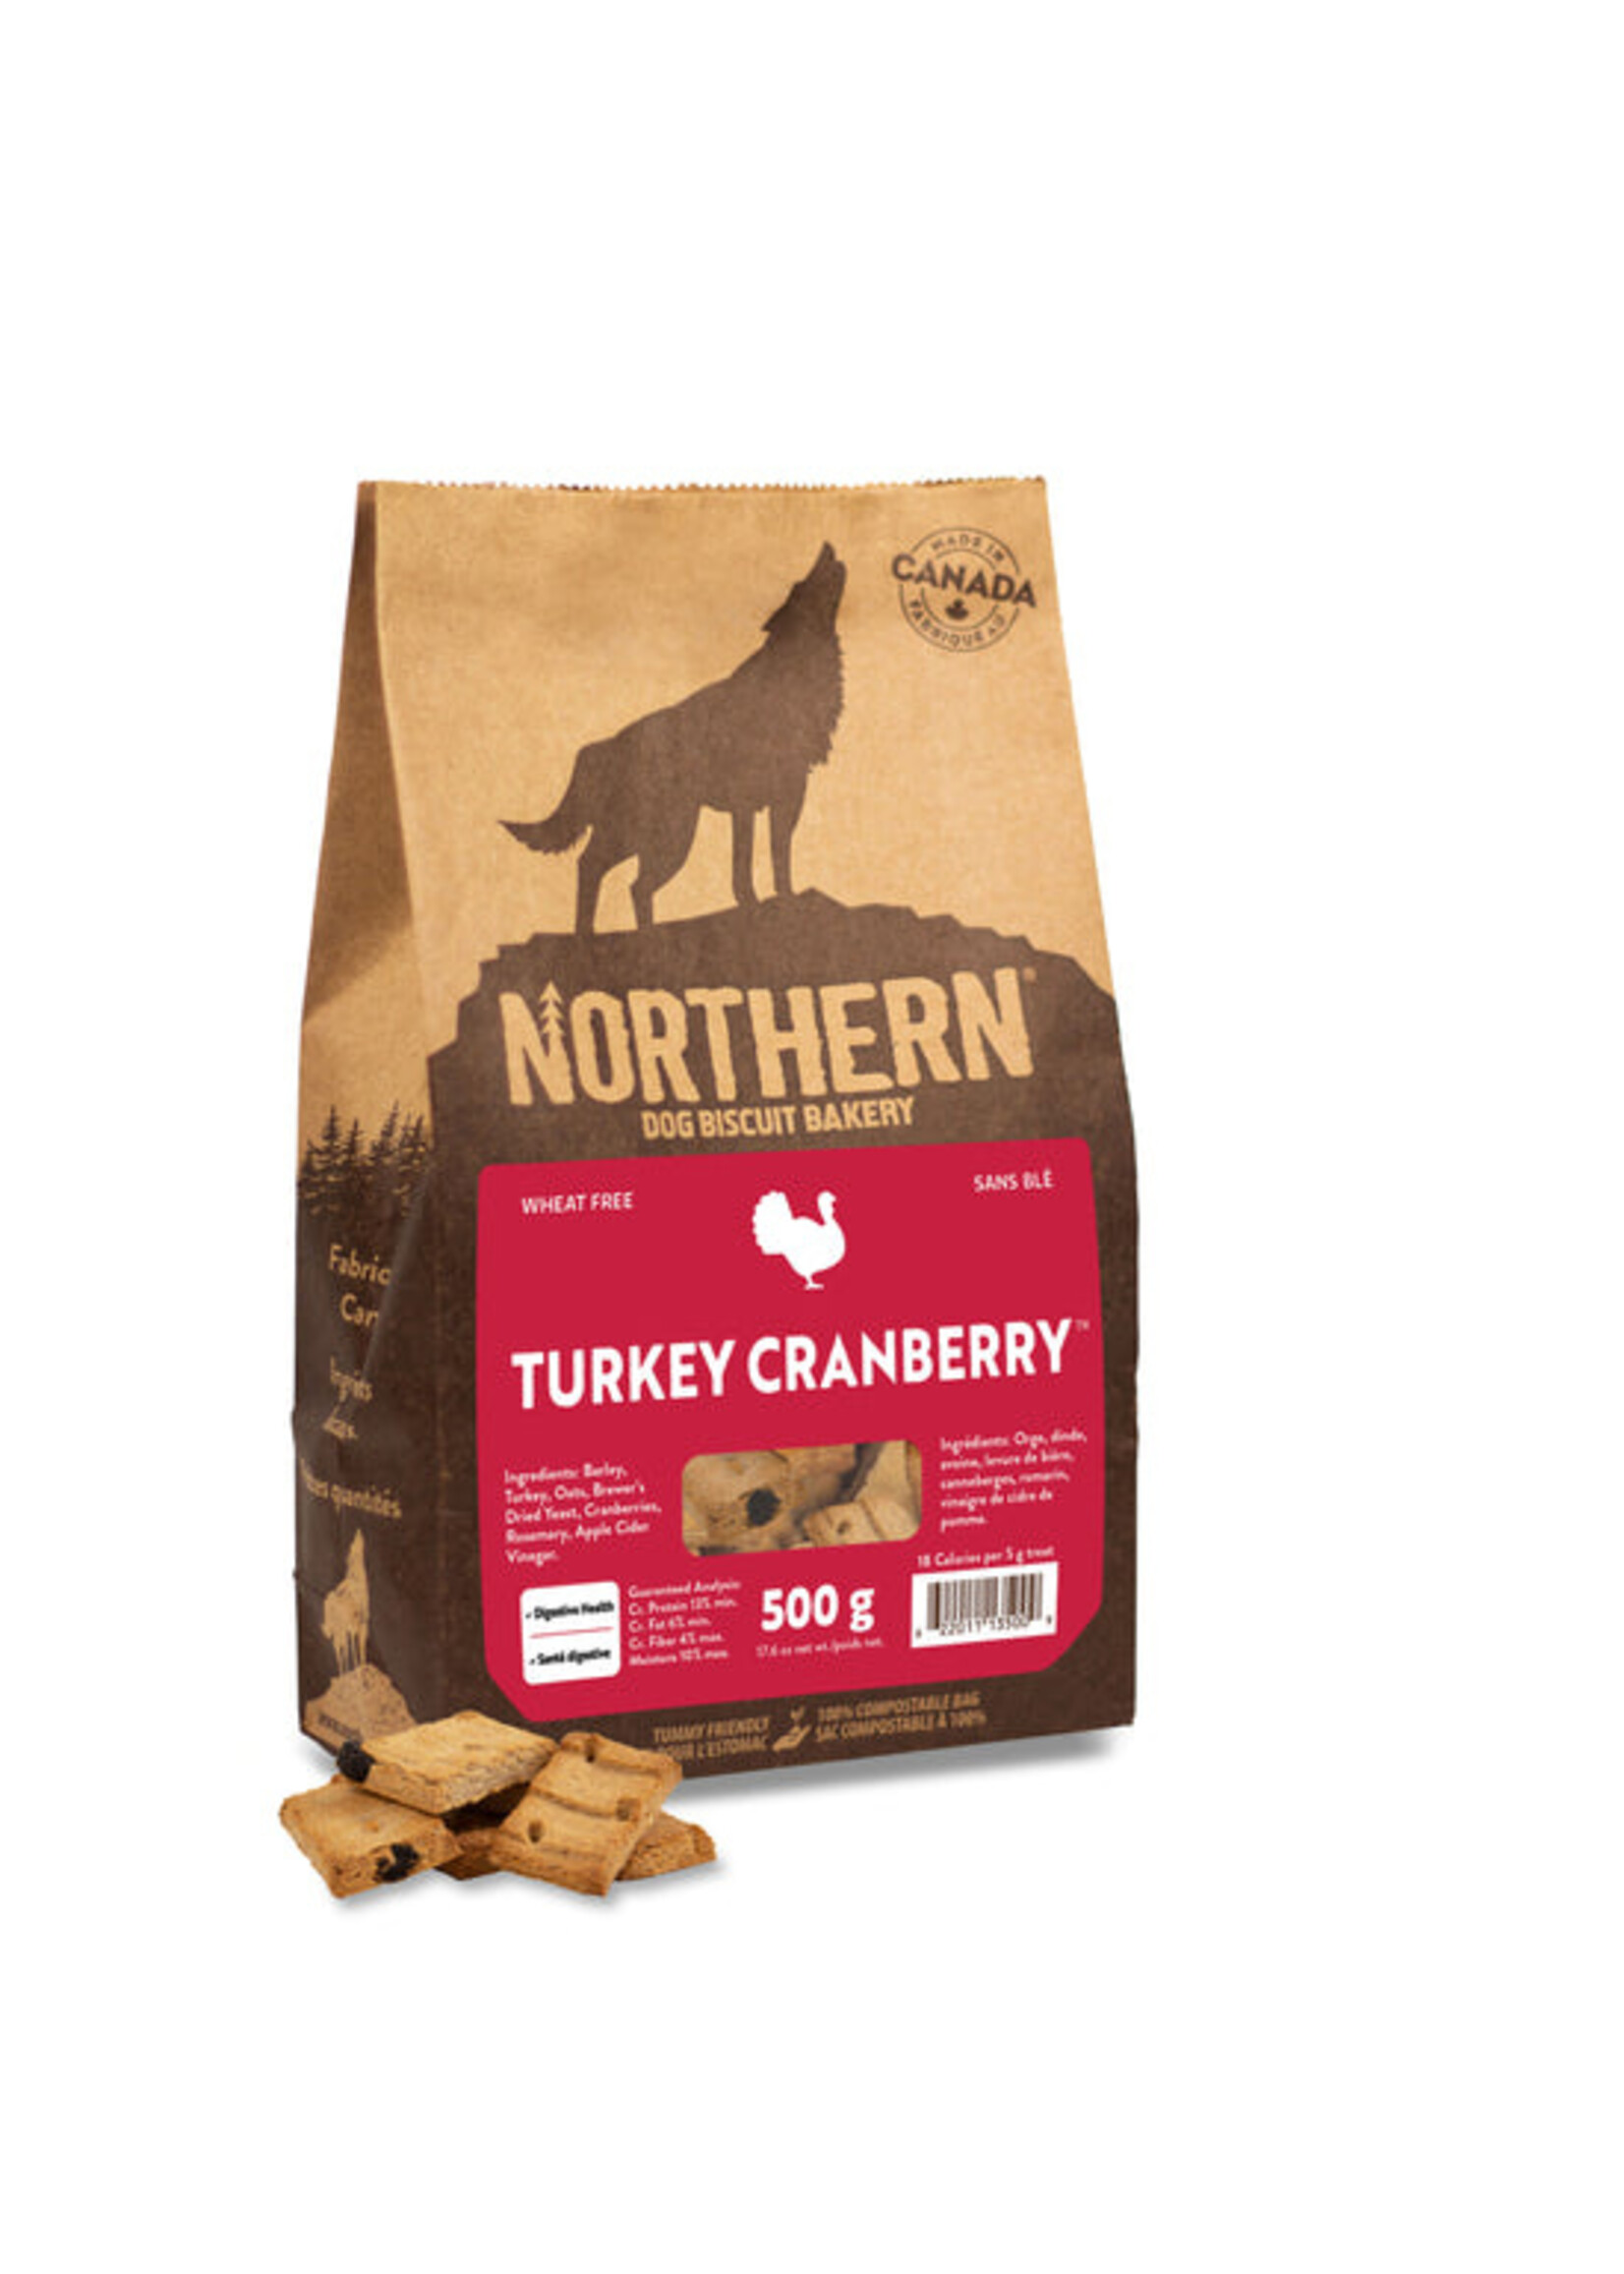 Northern Biscuit WF Turkey Cranberry 500 g / 17.6 oz